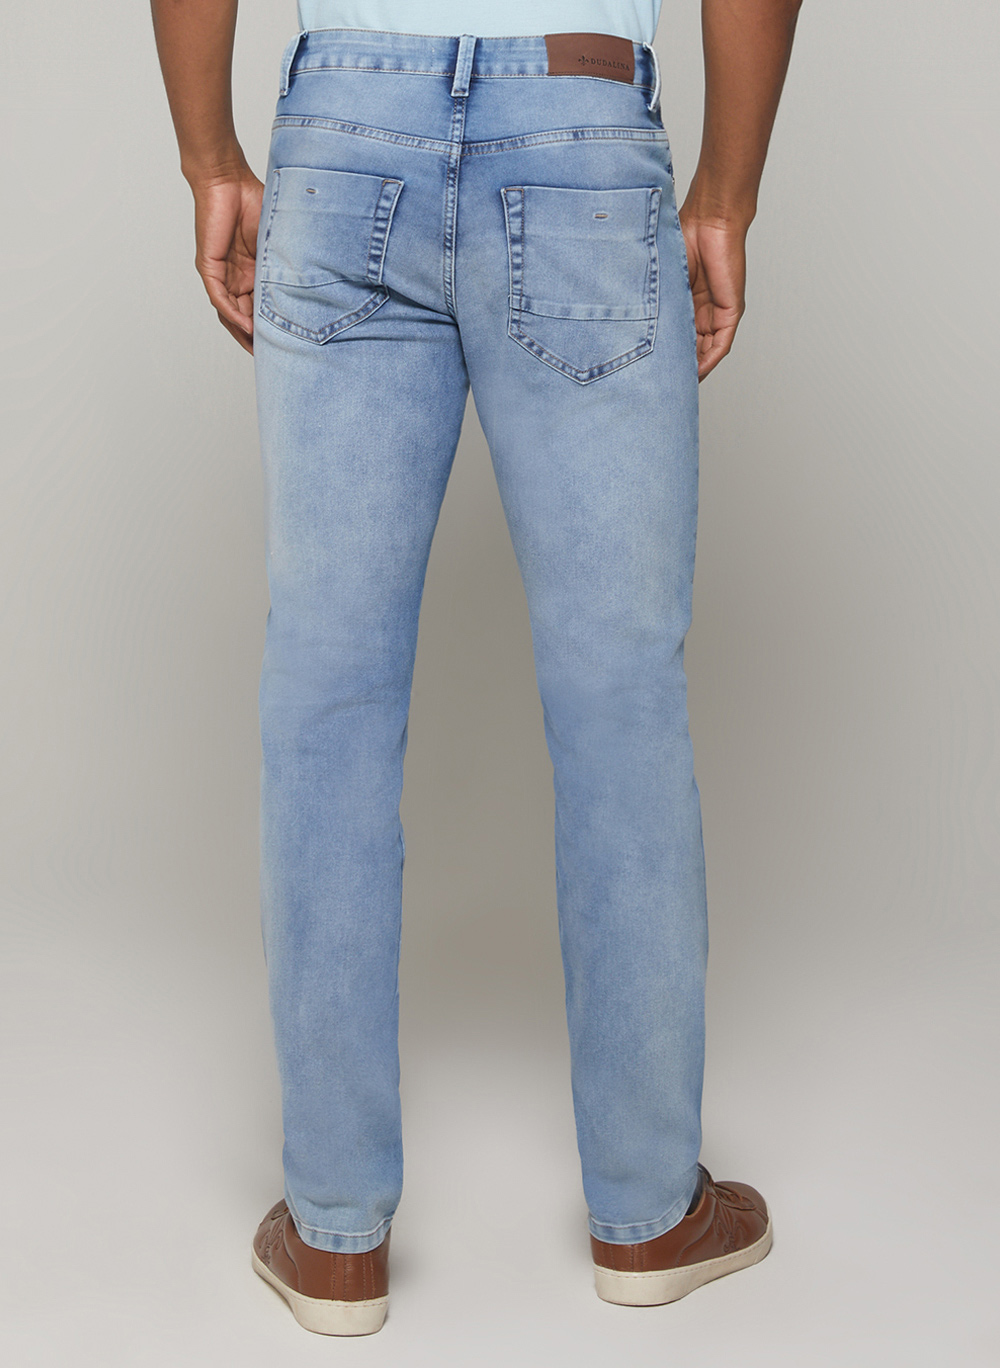 Calça Jeans Masculina Blue Dudalina